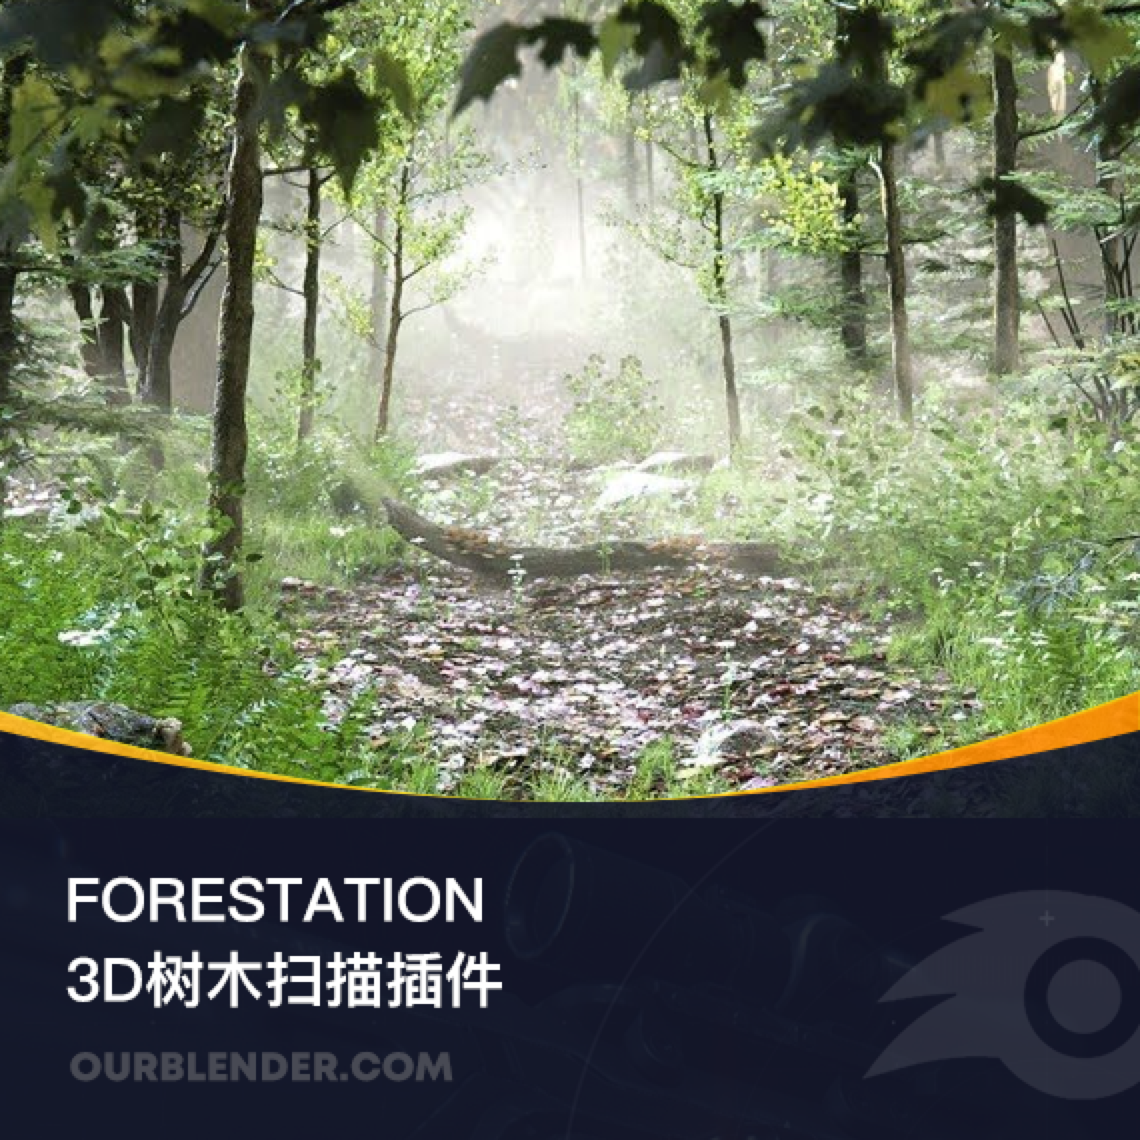 3D扫描树木插件 Forestation